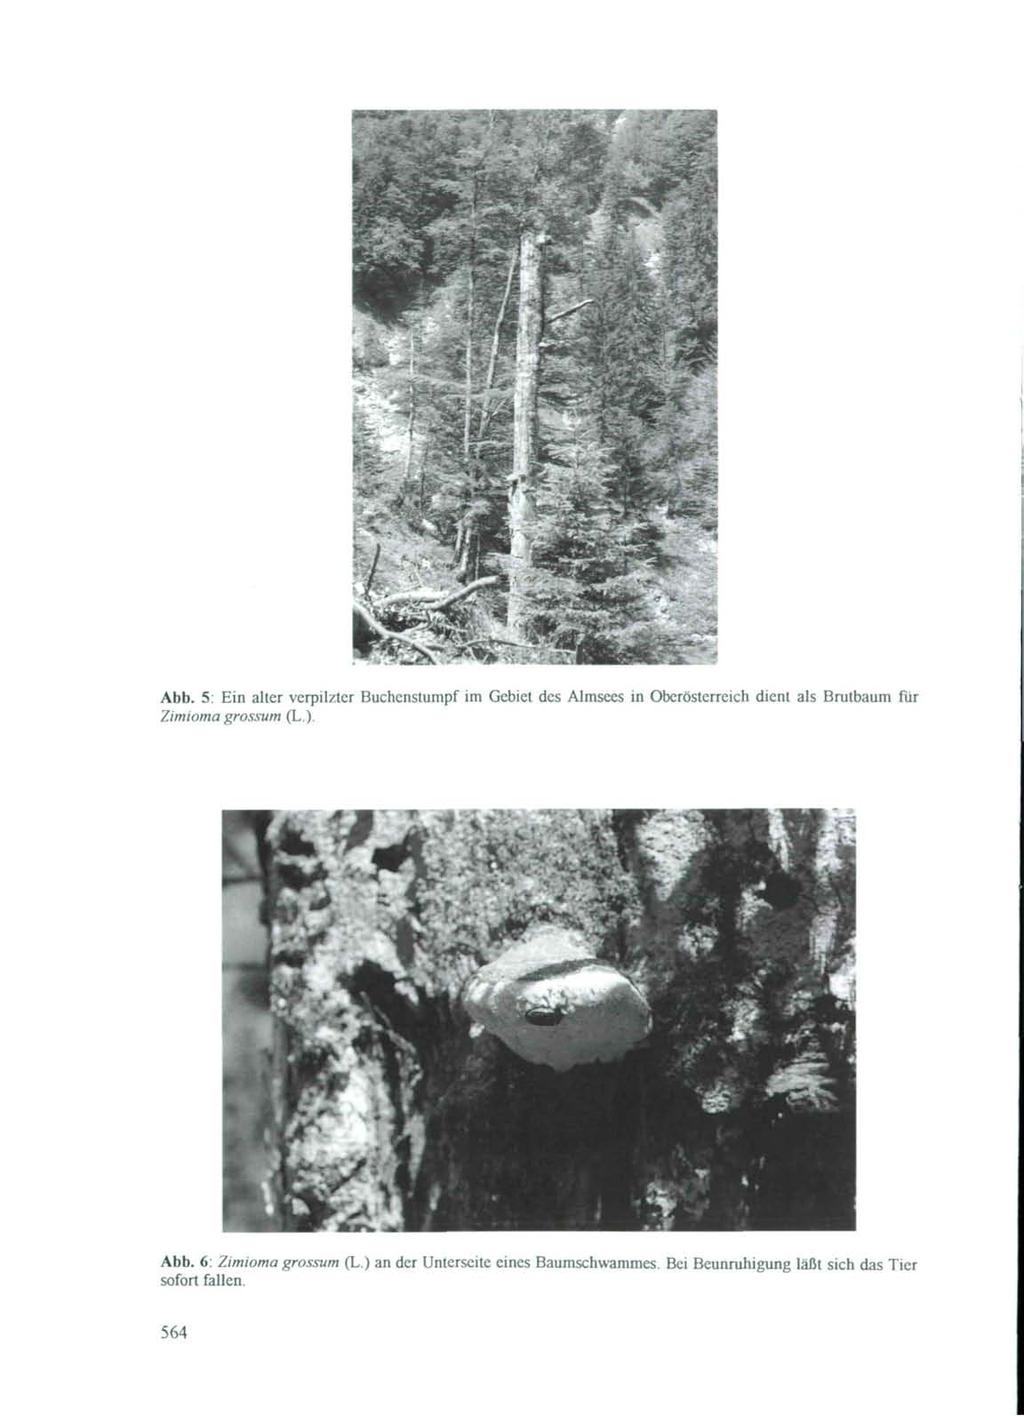 Abb. 5: Ein alter verpilzter Buchenstumpf im Gebiet des AJmsees in Oberösterreich dient als Brutbaum für Zimioma grossum (L.